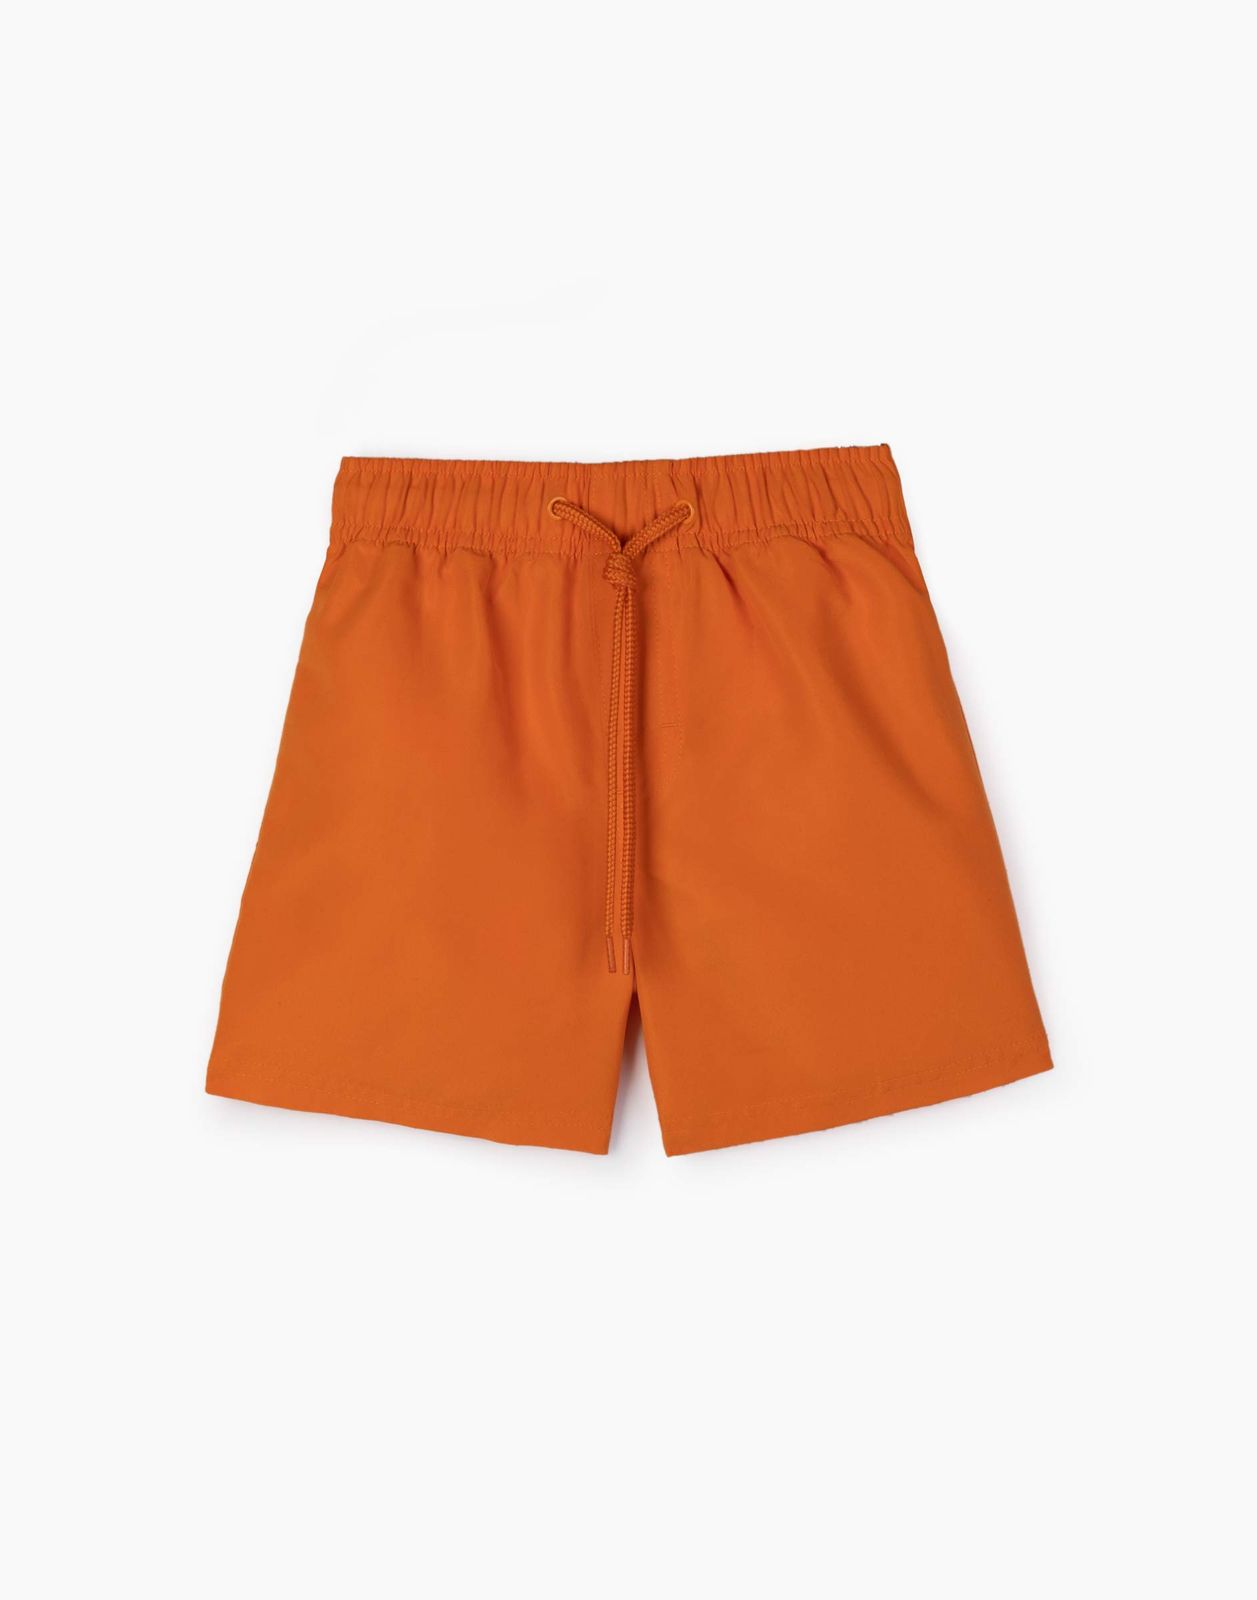 Пляжные шорты для мальчика Gloria Jeans BSM000720 оранжевый 12-24мес/92 бейсболка для мальчика minaku оранжевый зеленый р р 52 см